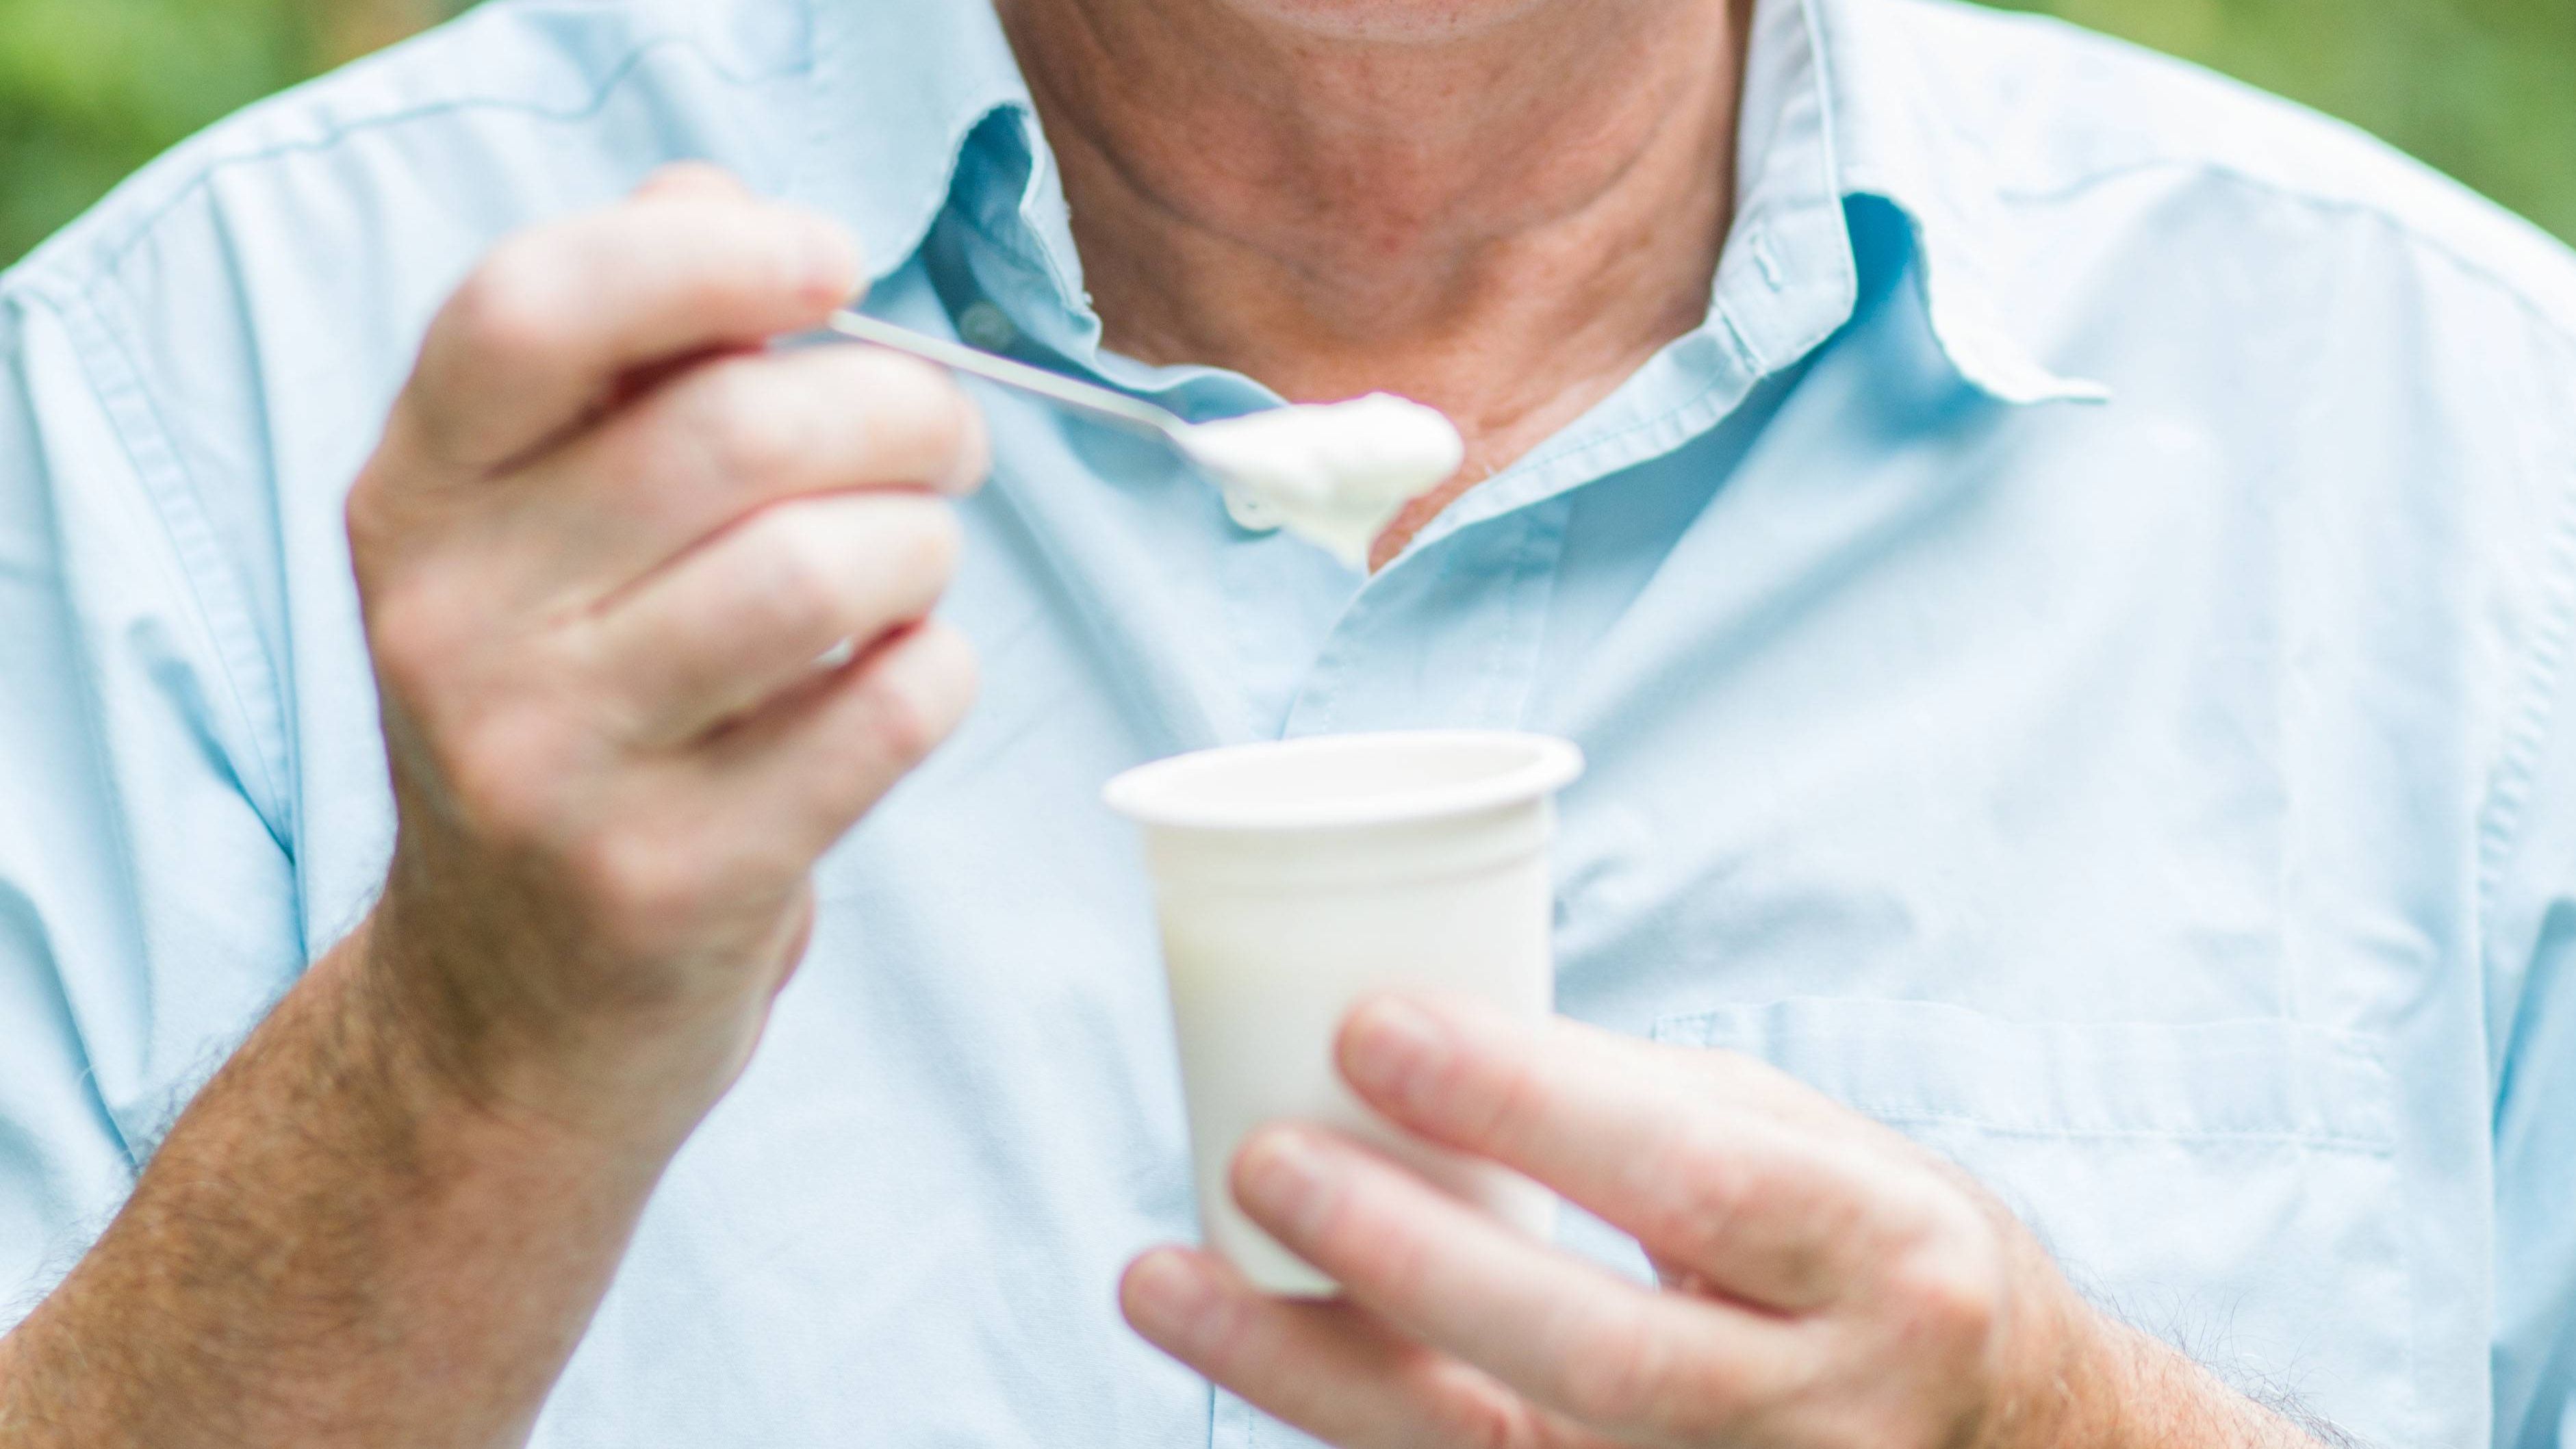 Por qué no debes tirar el líquido del yogur